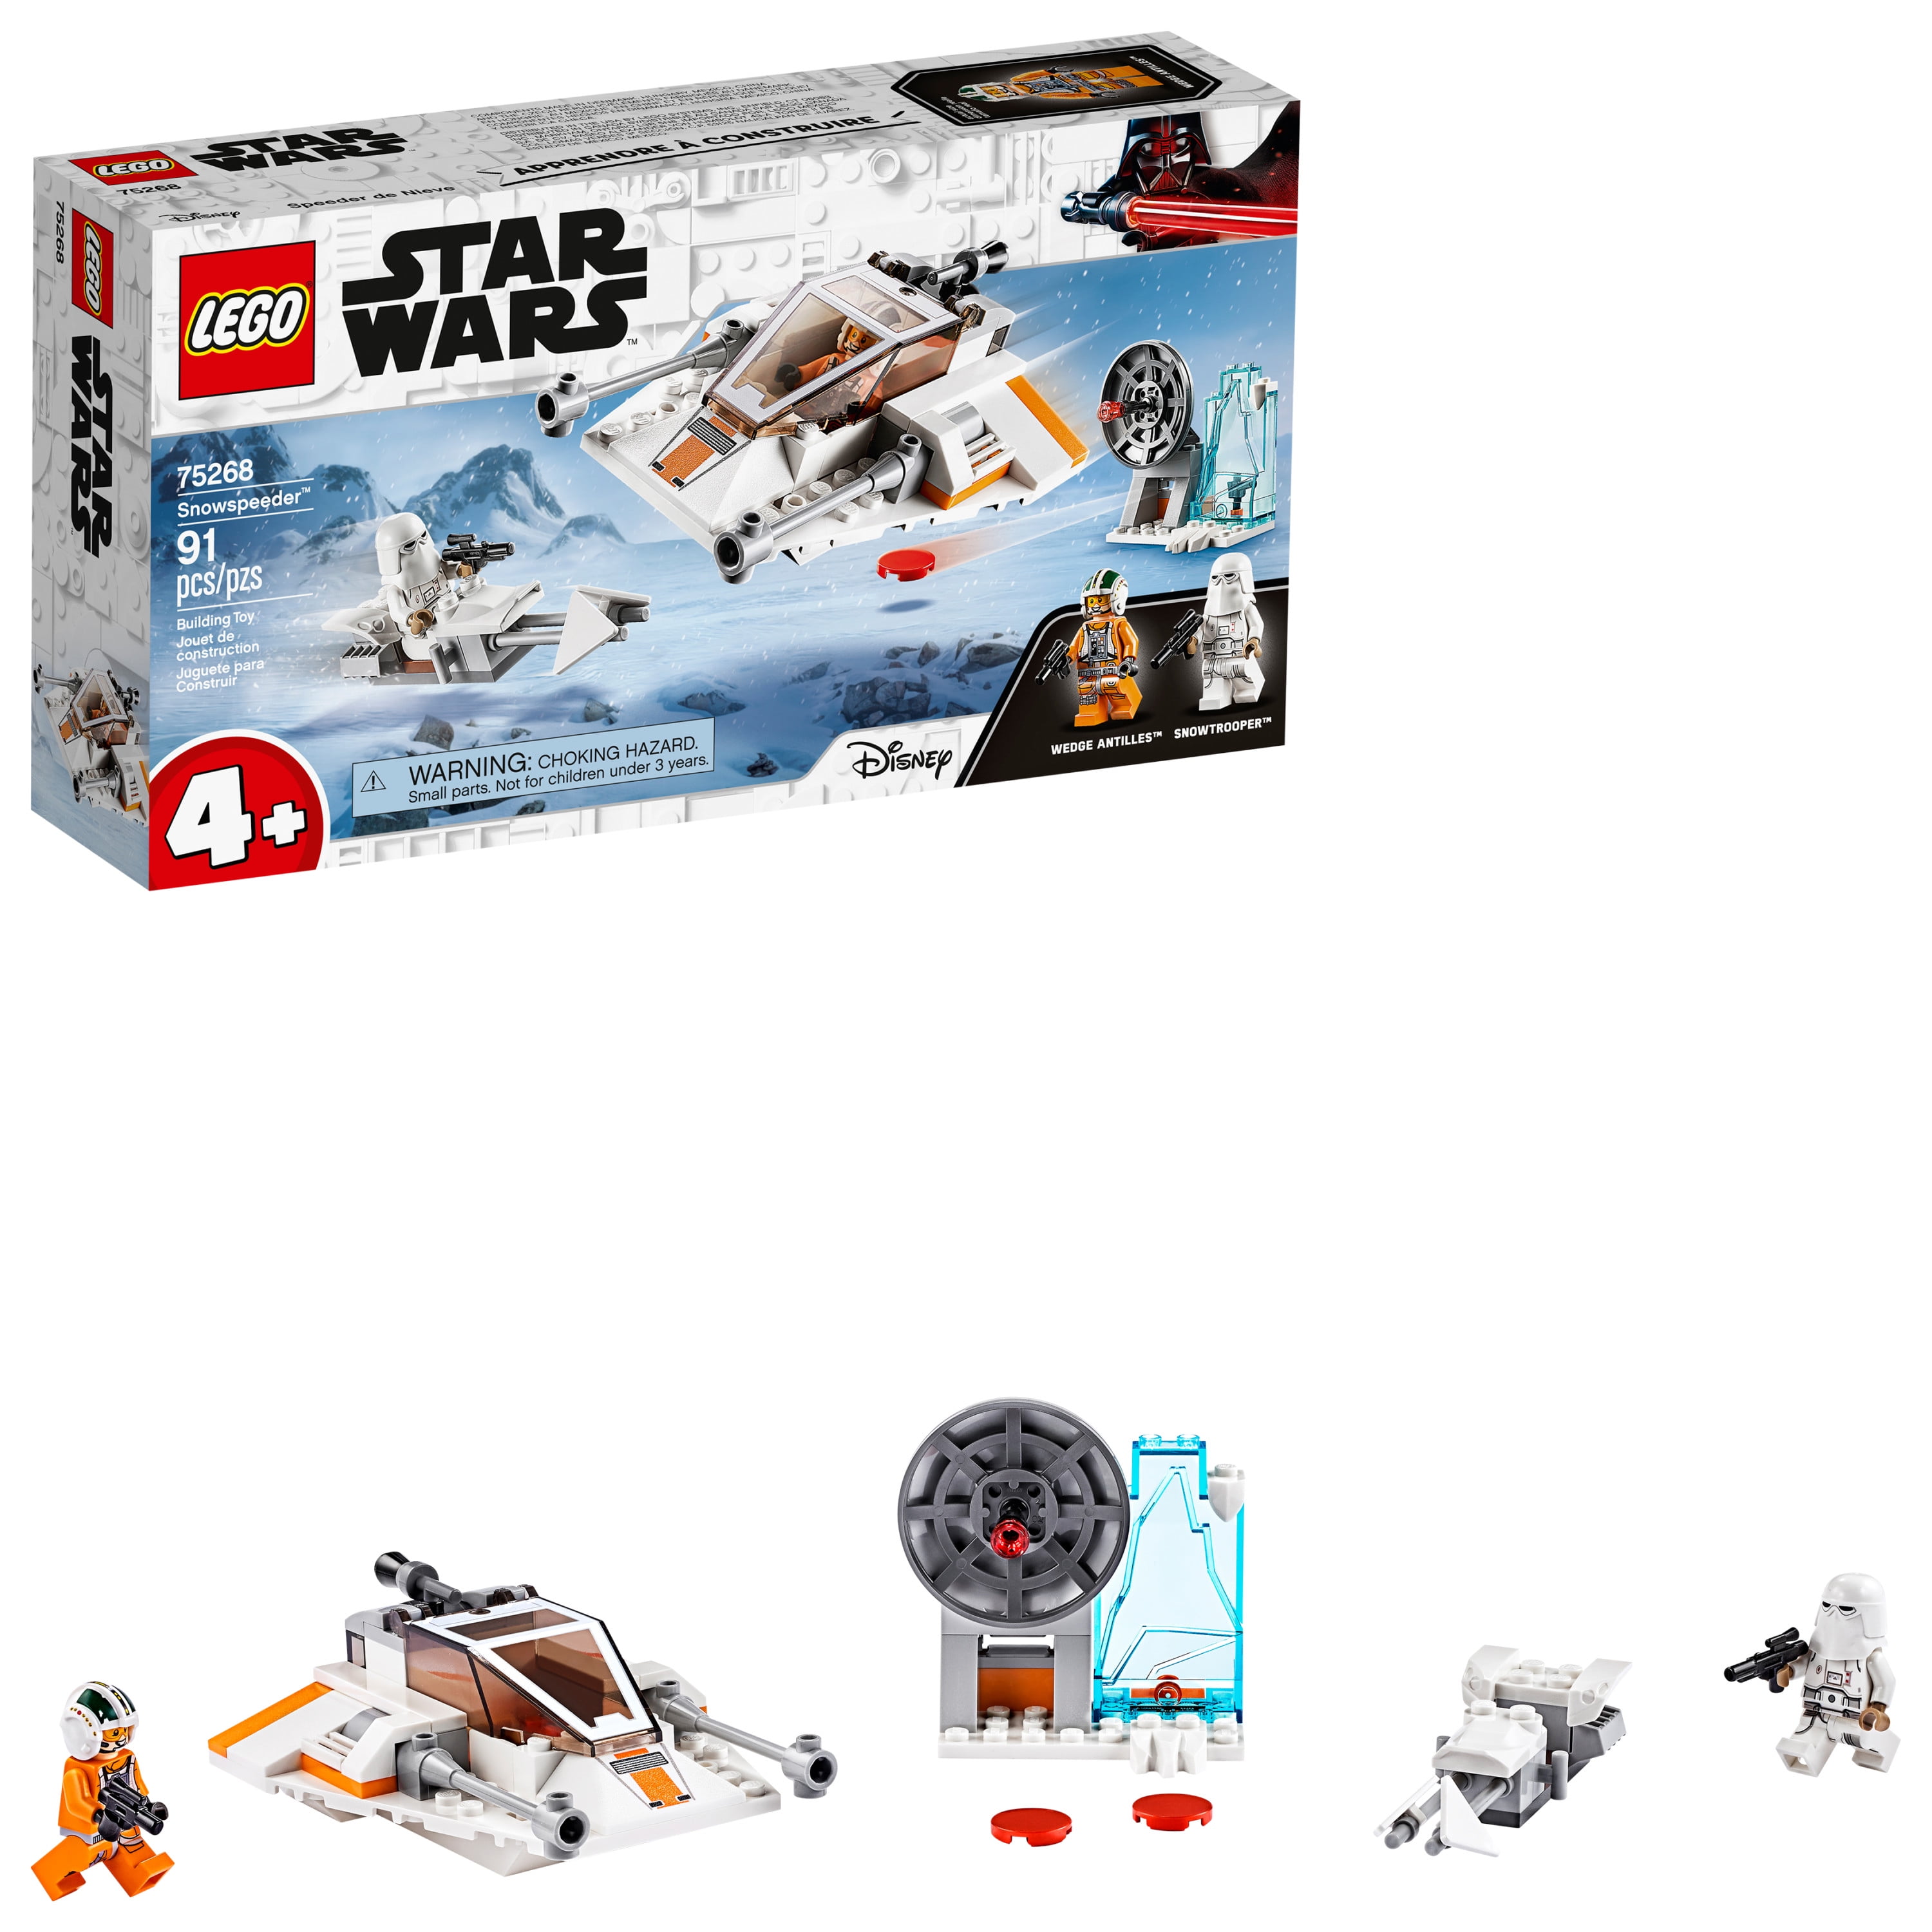 91 Pieces Box Is Damaged LEGO Star Wars Snowspeeder 75268 Starship New 2020 